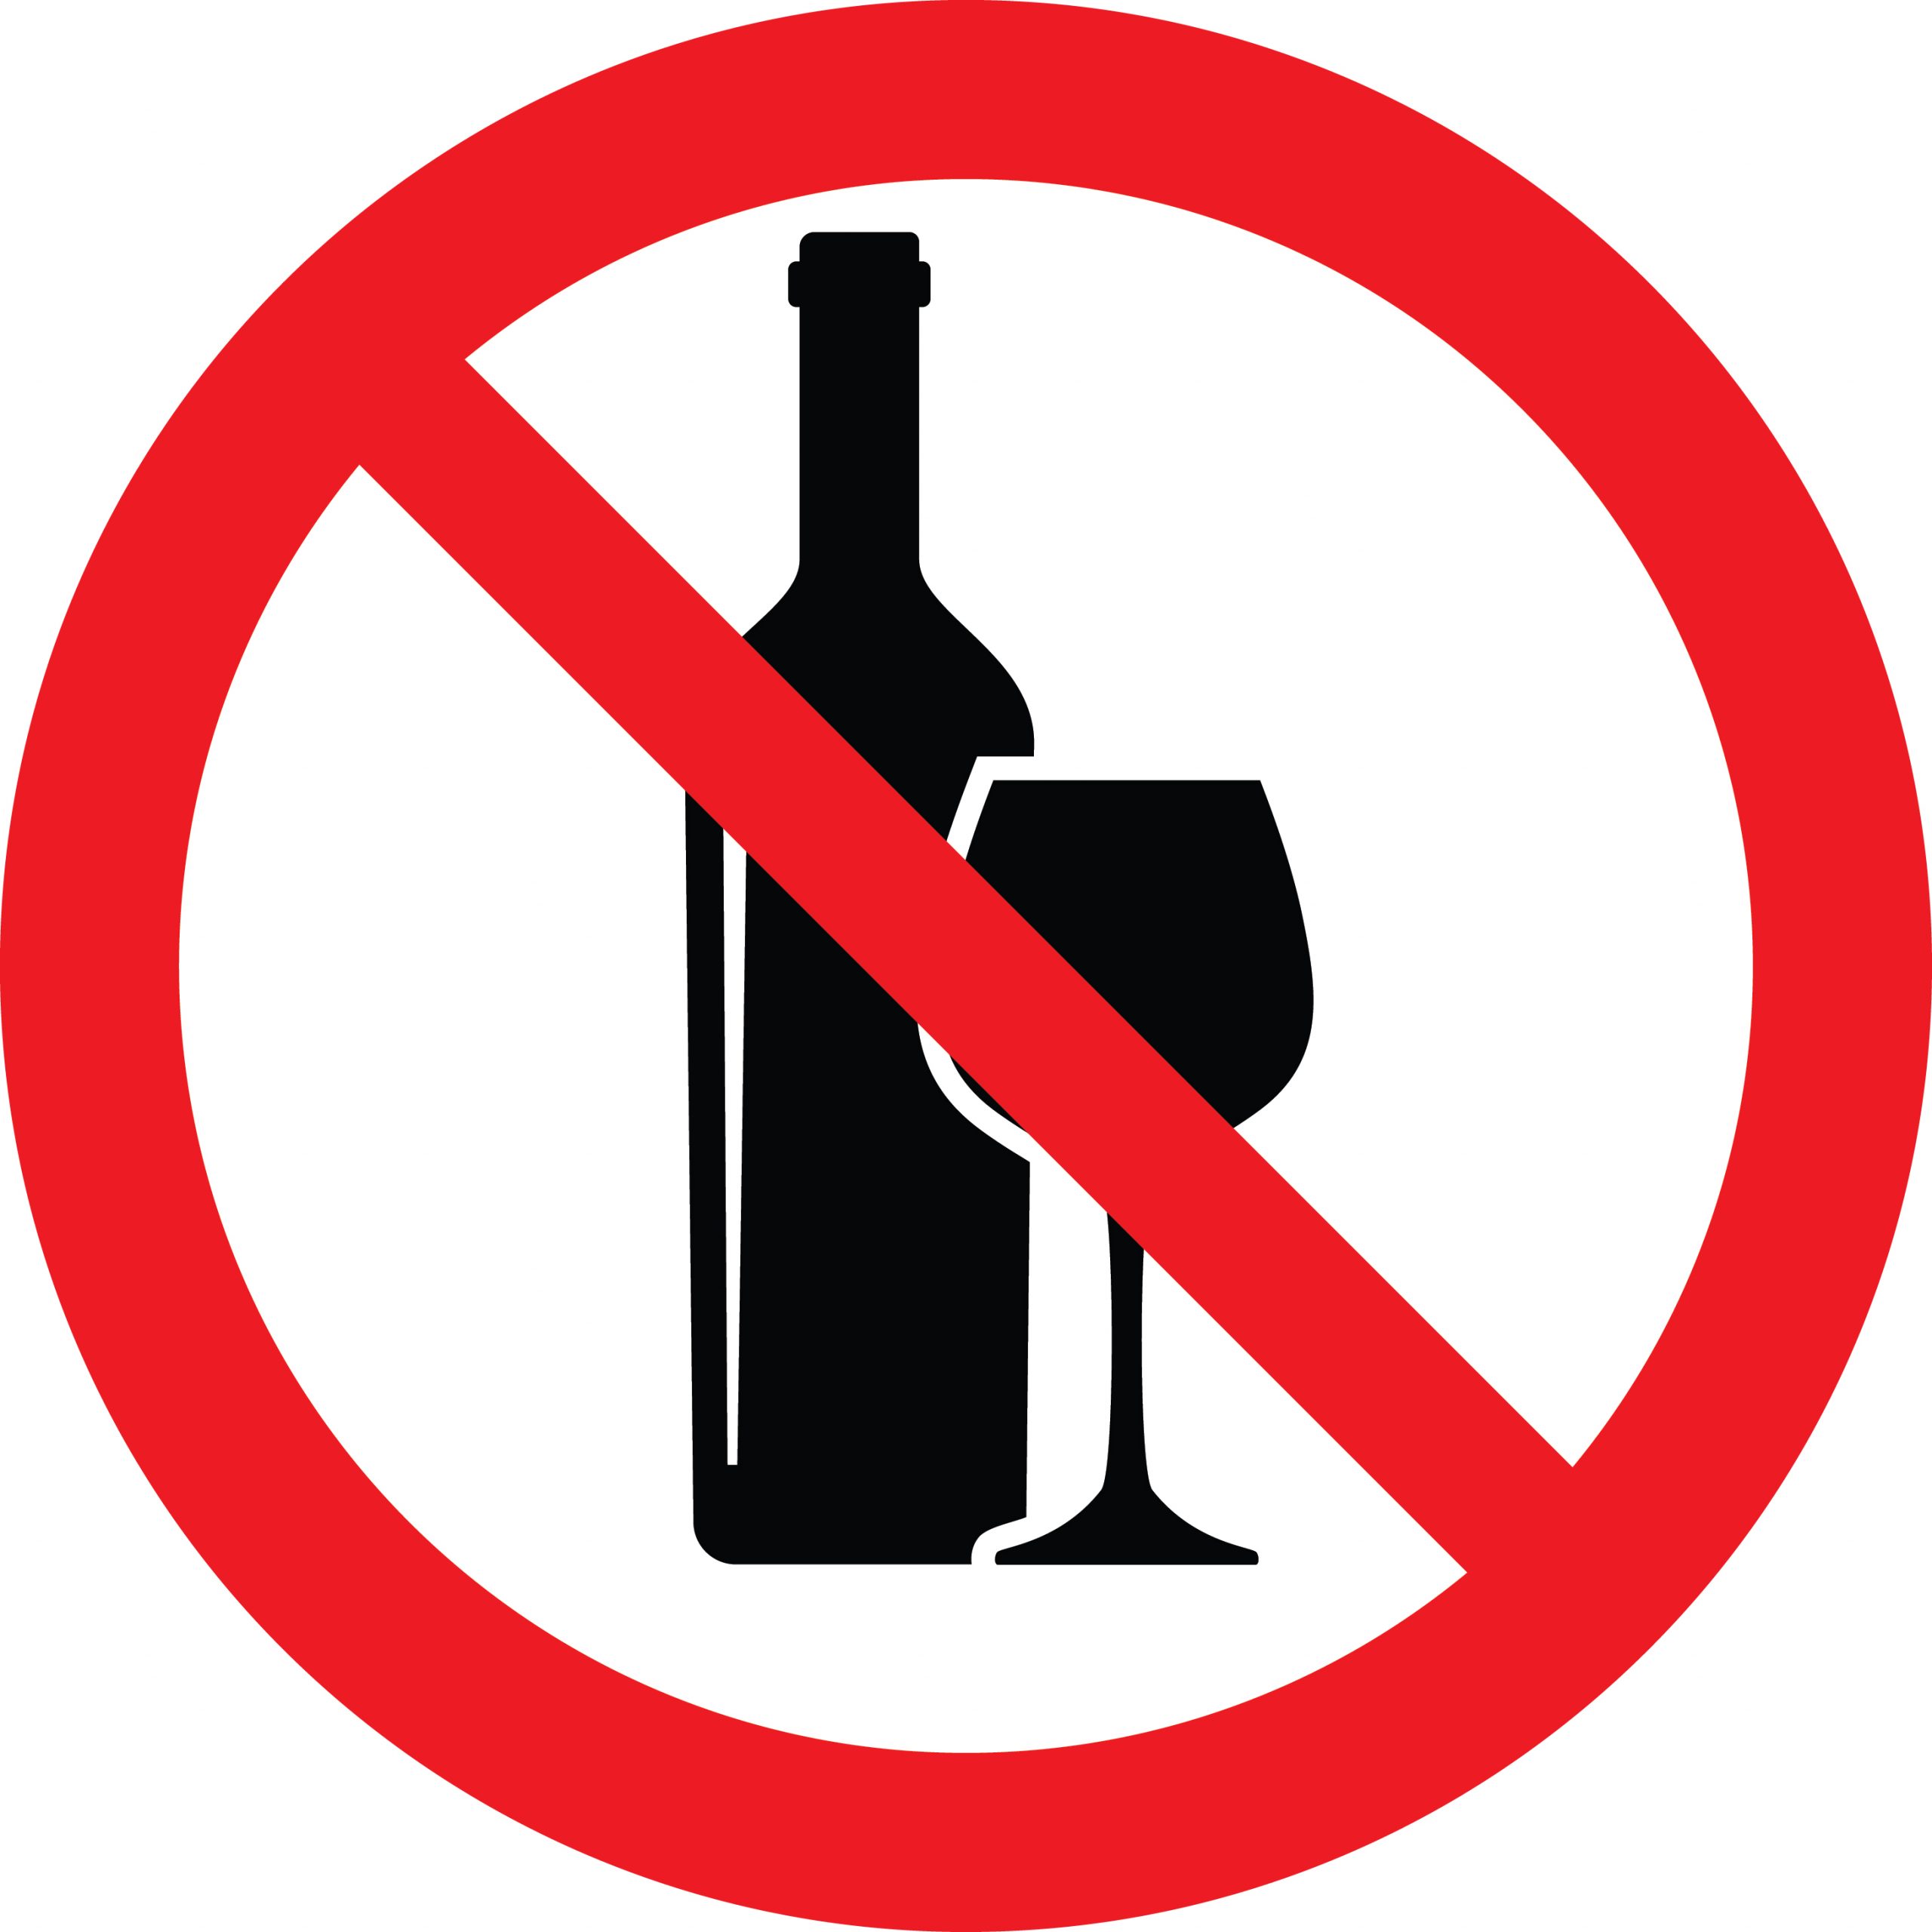 A symbol to represent no alcohol